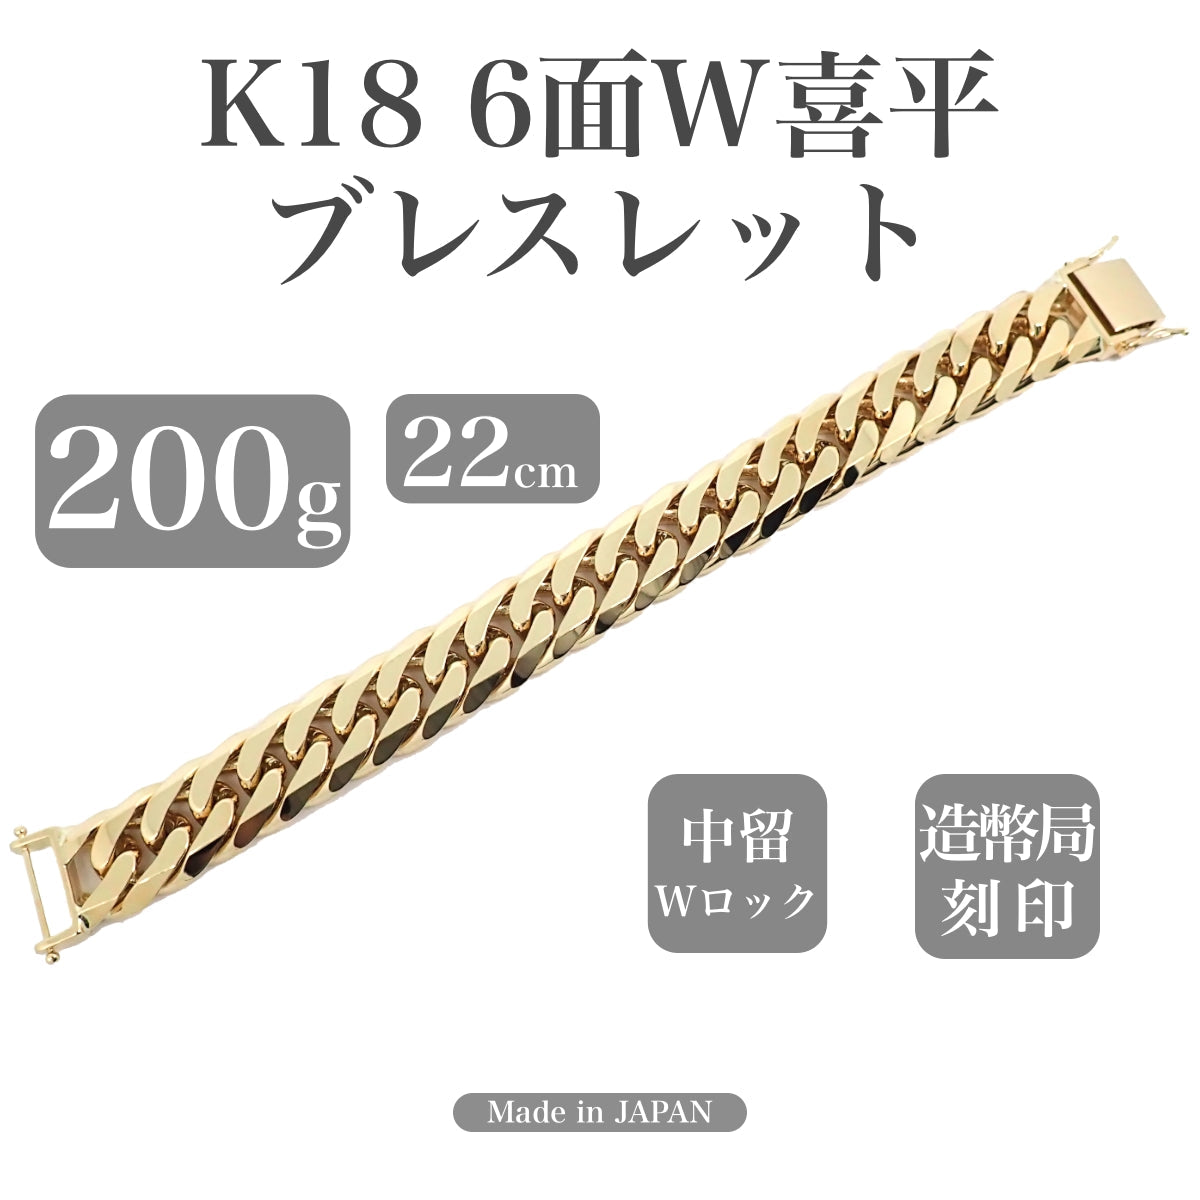 K18 喜平6面ダブル ブレスレット 18cm 20.3g